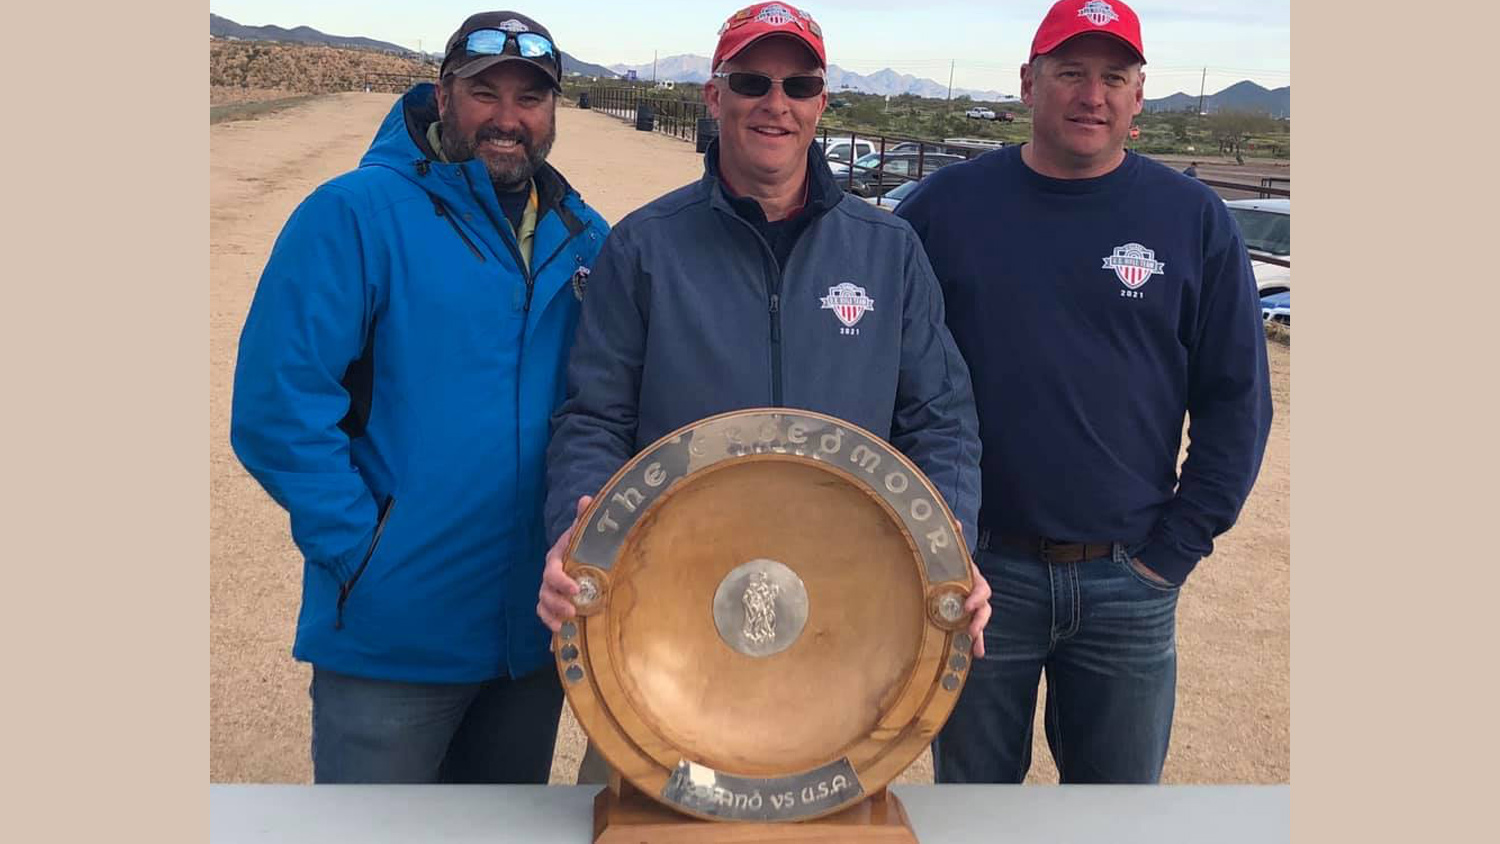 U.S. Rifle Team Wins 2019 Creedmoor Cup in Arizona